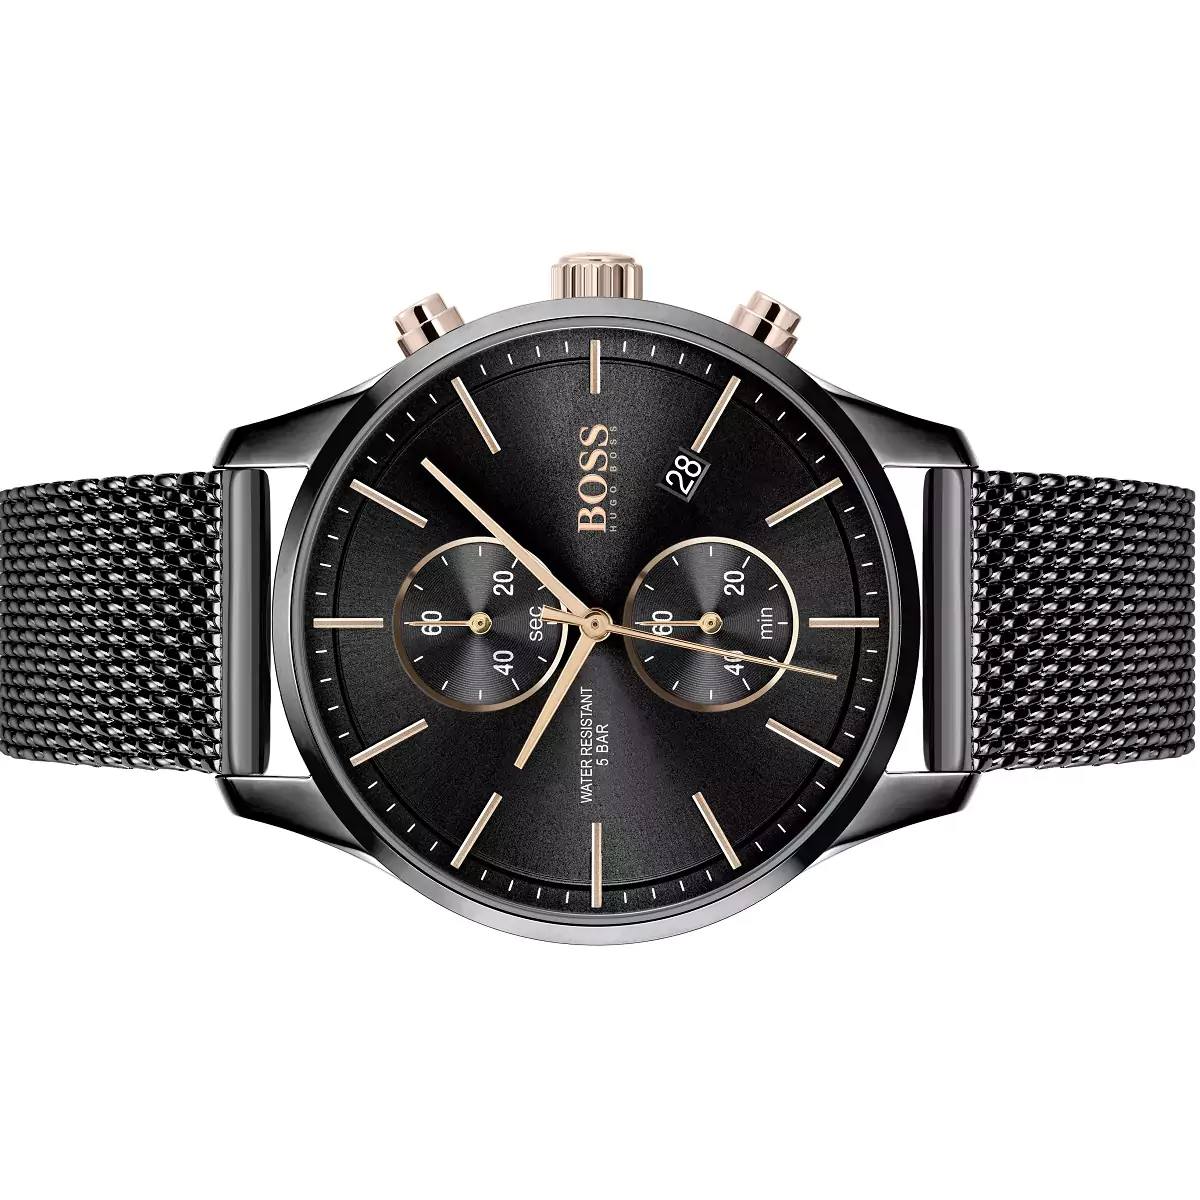 Zegarek męski klasyczny chronograf Hugo Boss 1513811 Associate – Salon  jubilerski Kieca